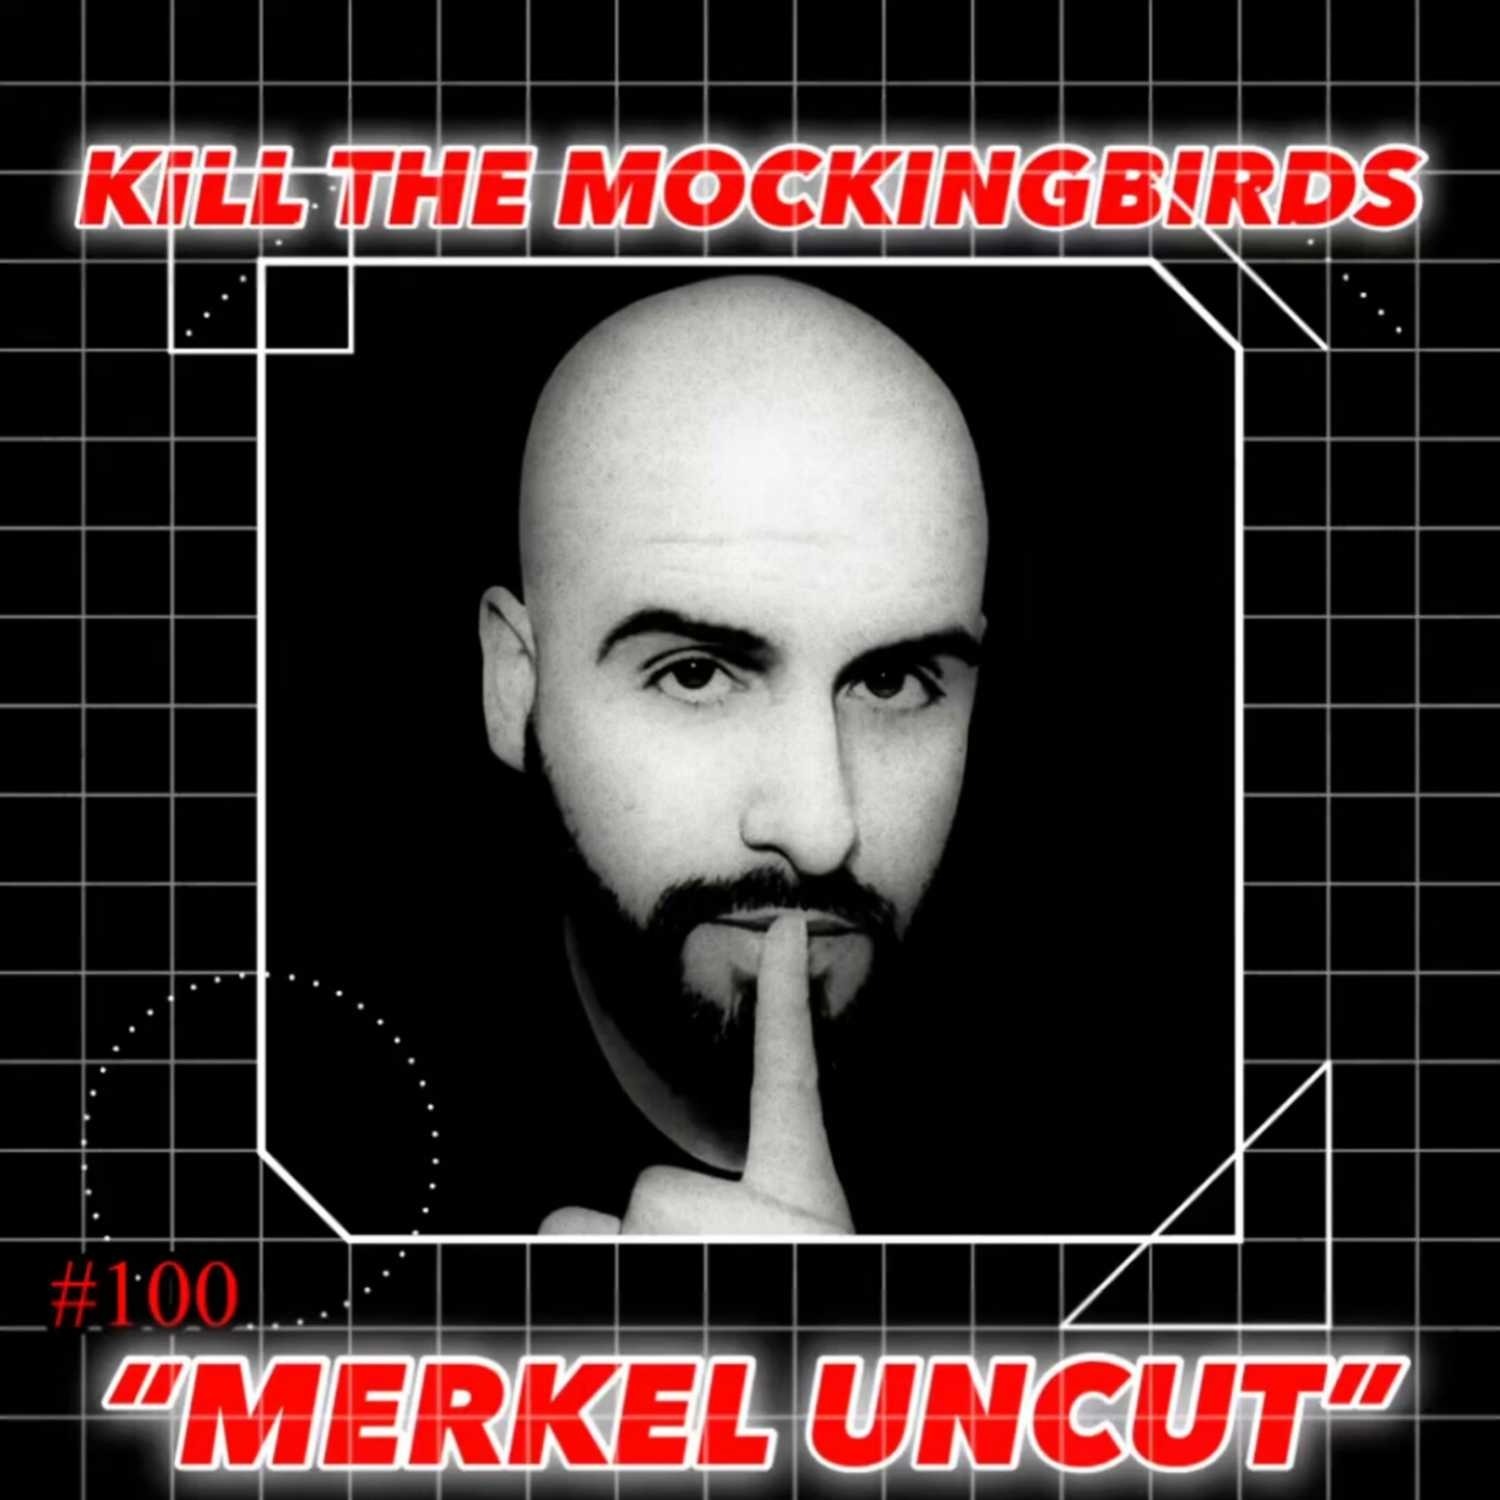 #100 “MERKEL UNCUT” w/ Tony Merkel